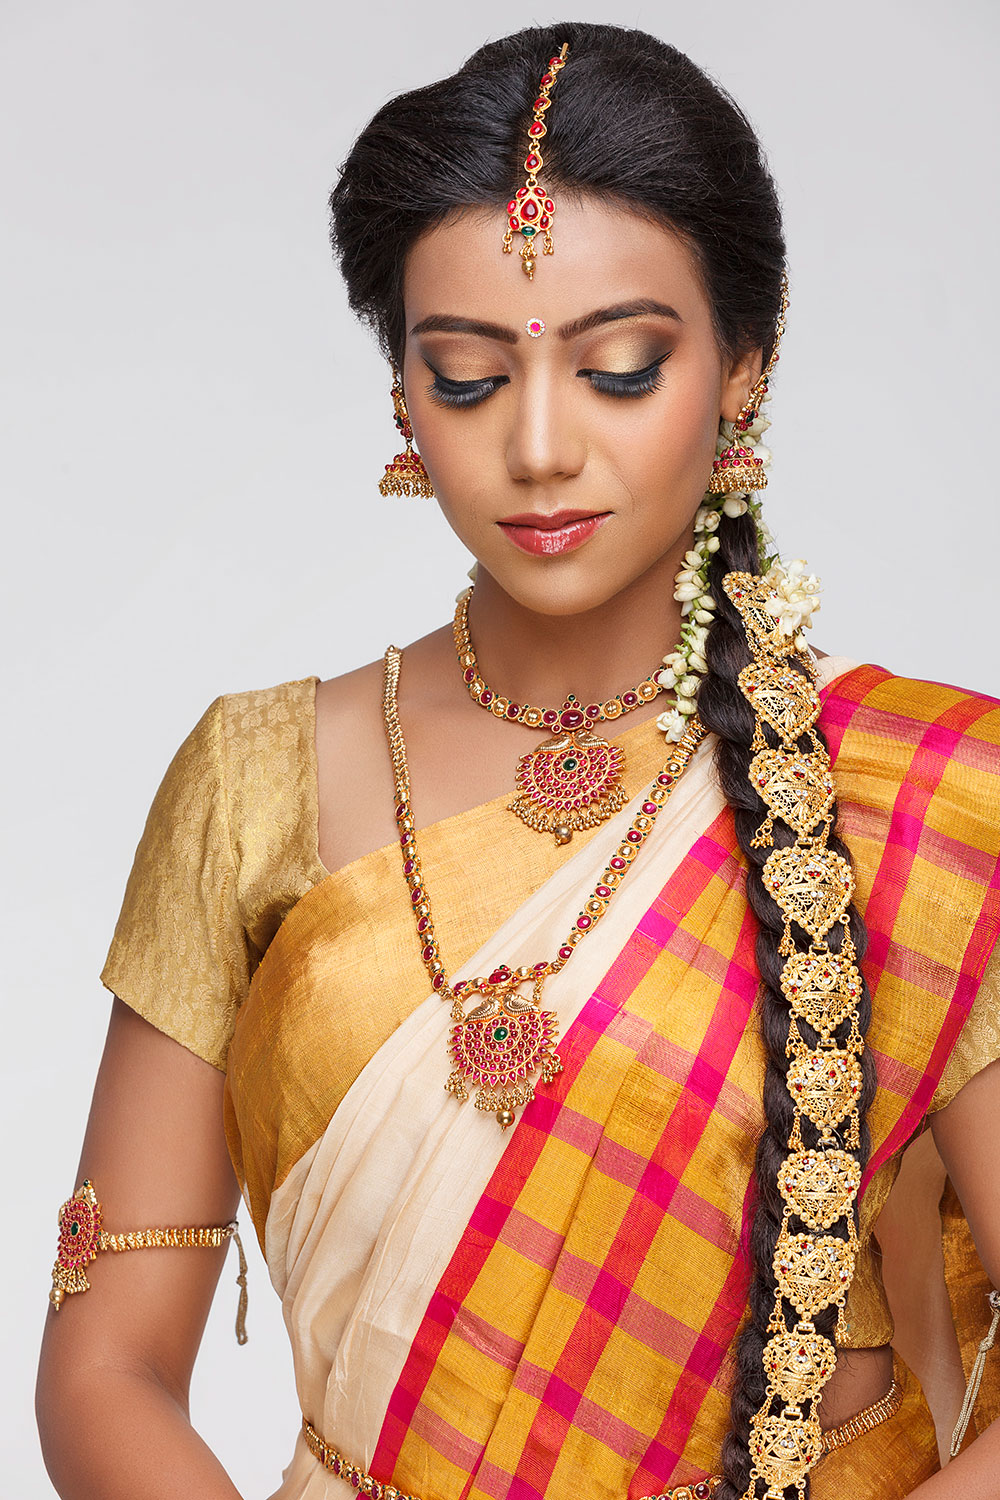 South Indian Bridal Makeup Look